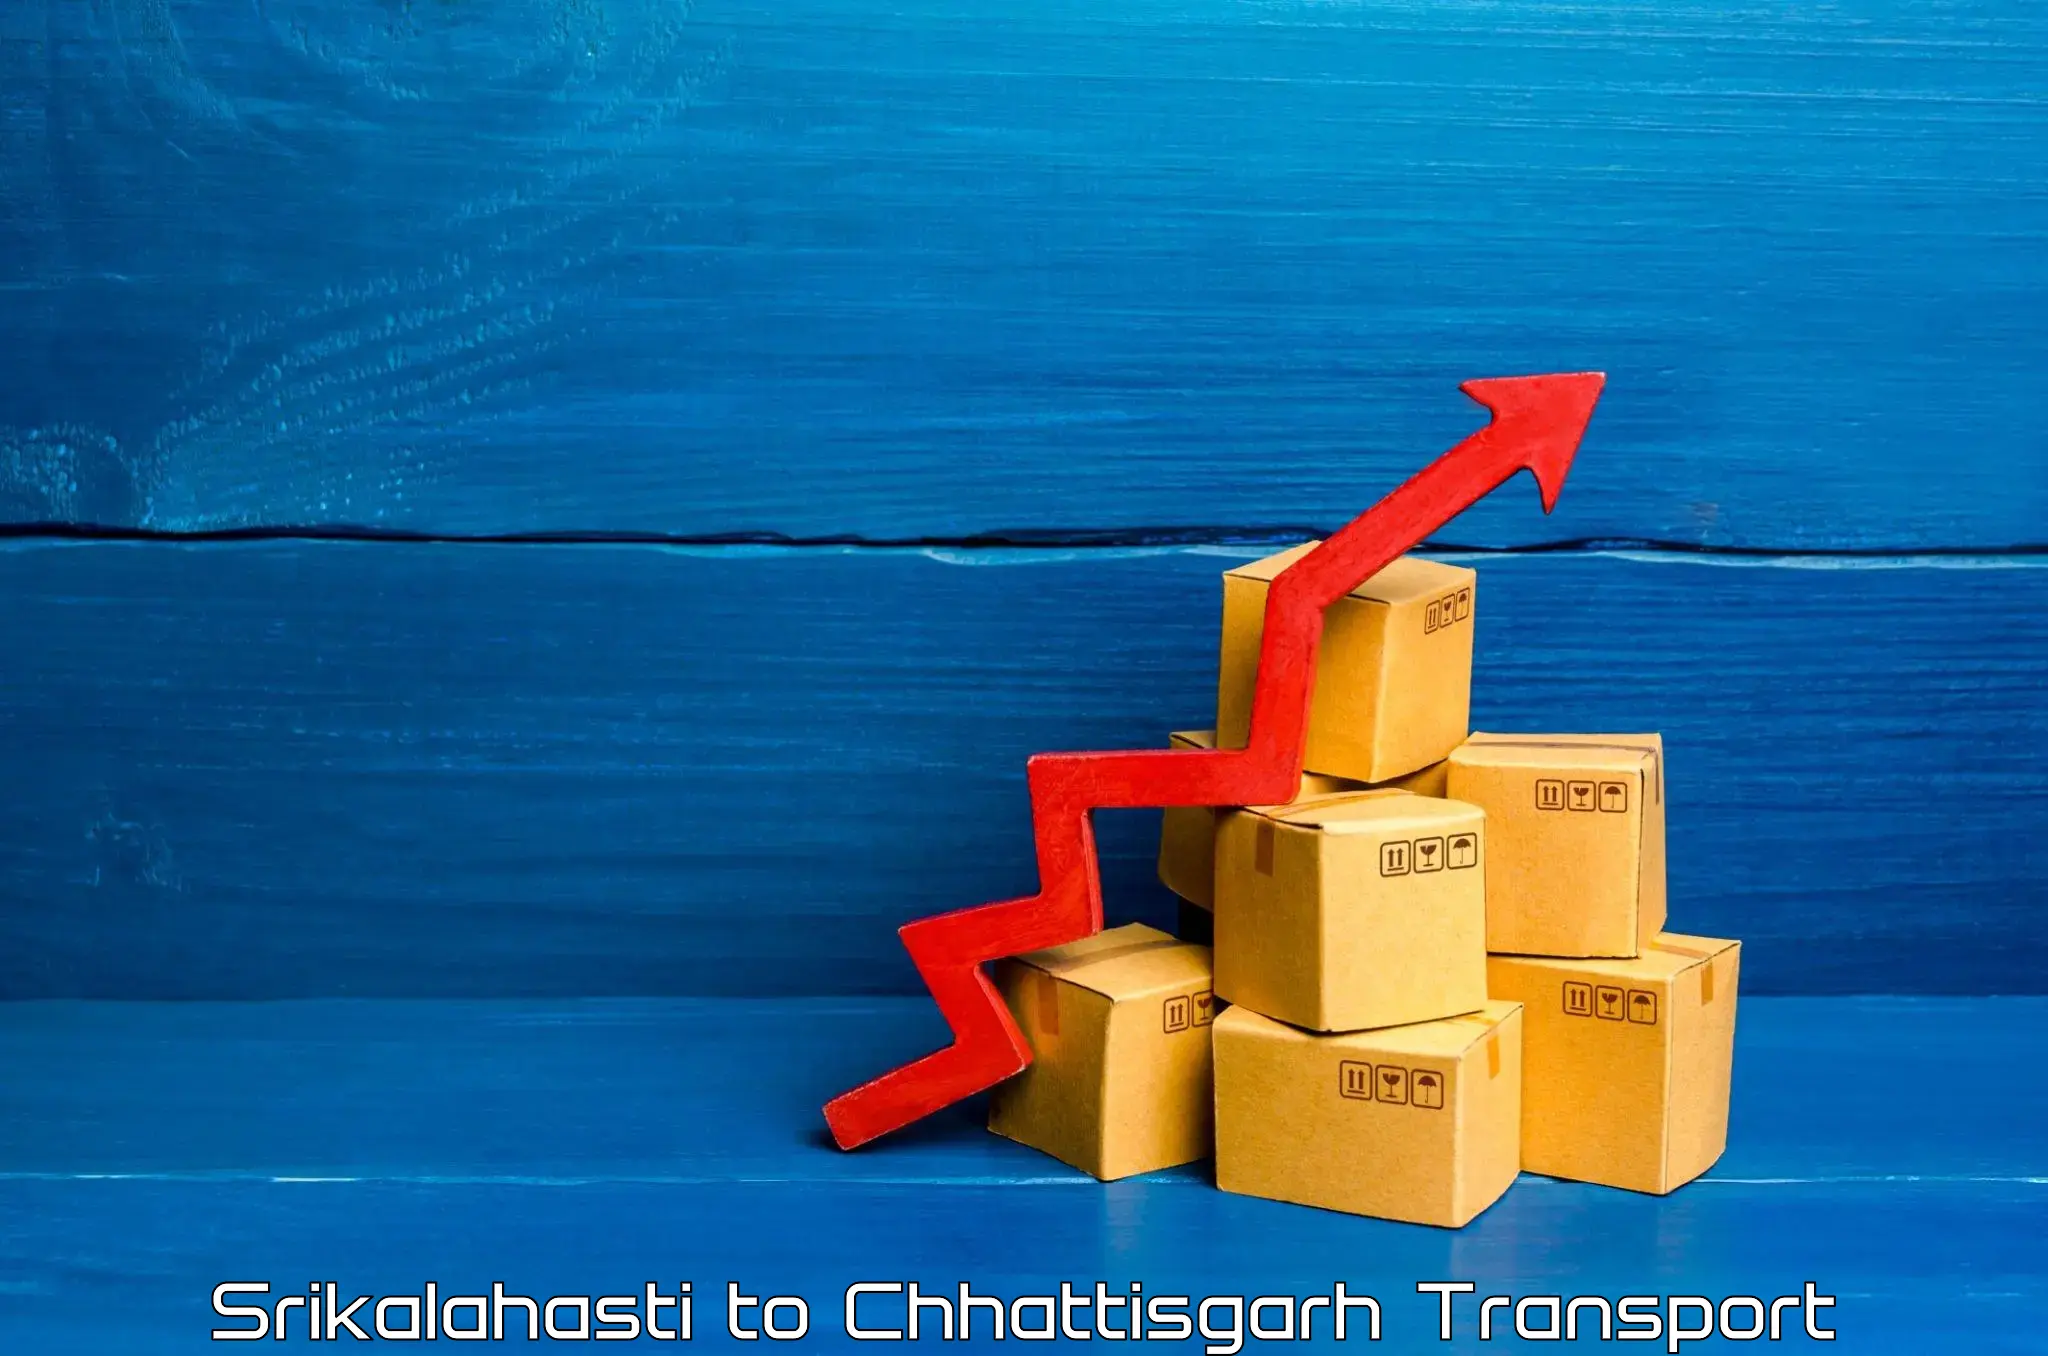 Shipping partner Srikalahasti to Chhattisgarh